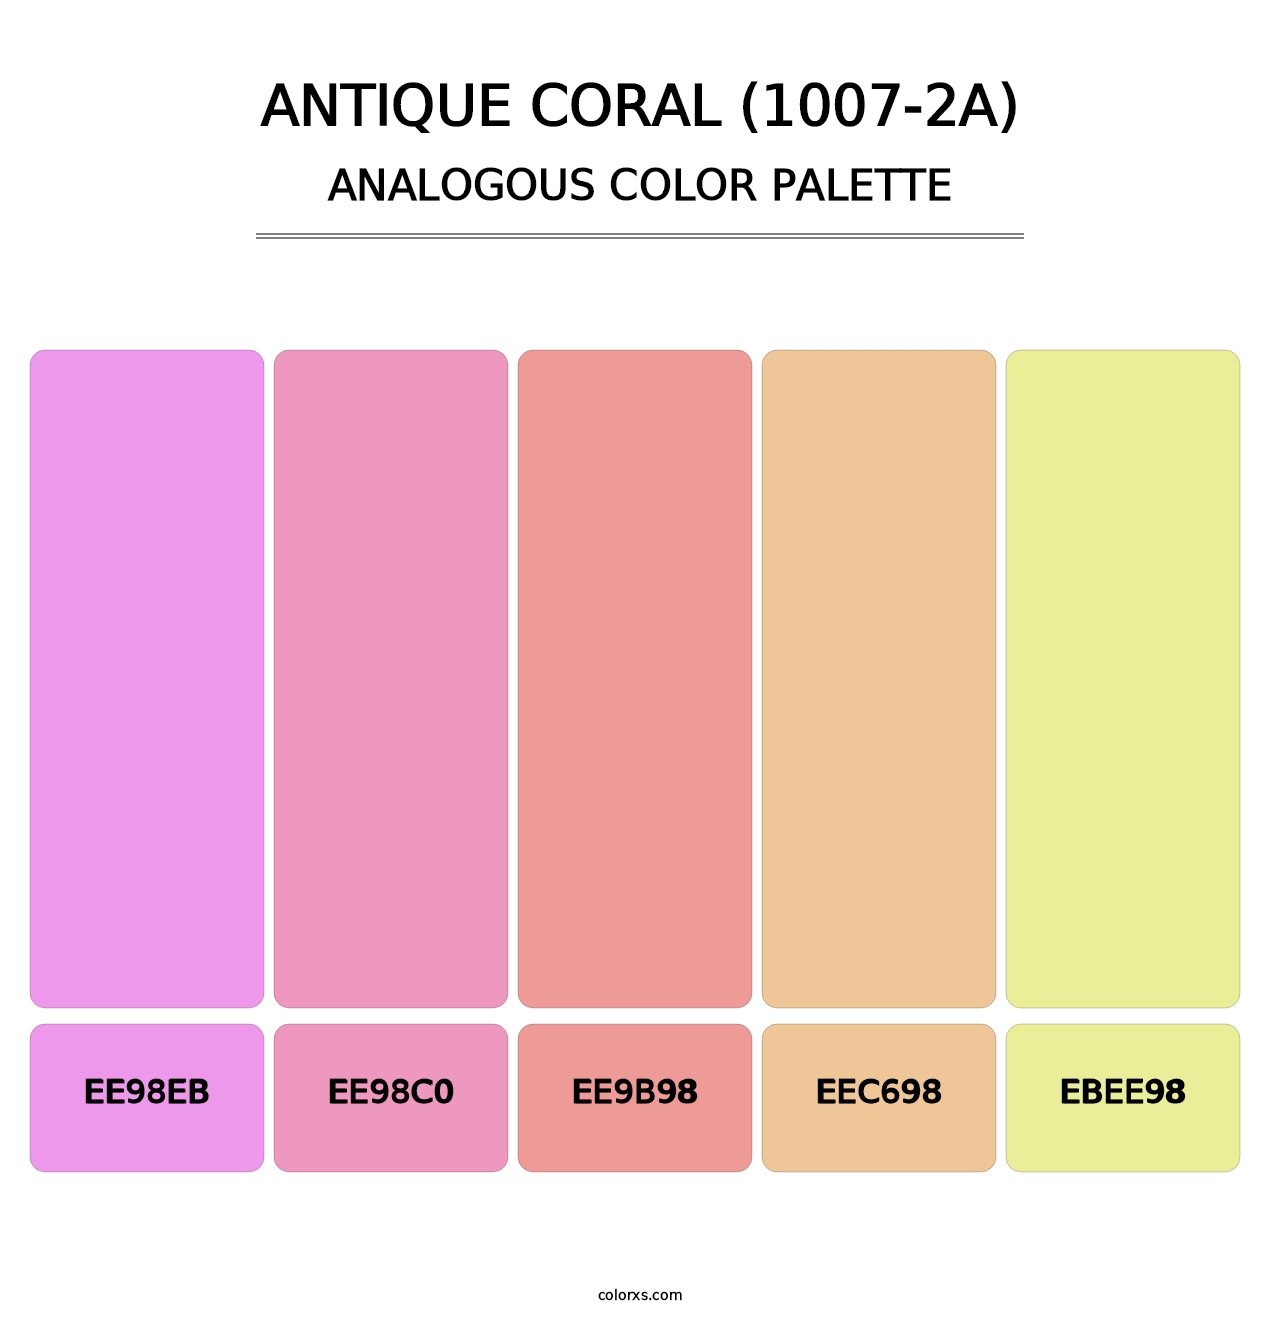 Antique Coral (1007-2A) - Analogous Color Palette